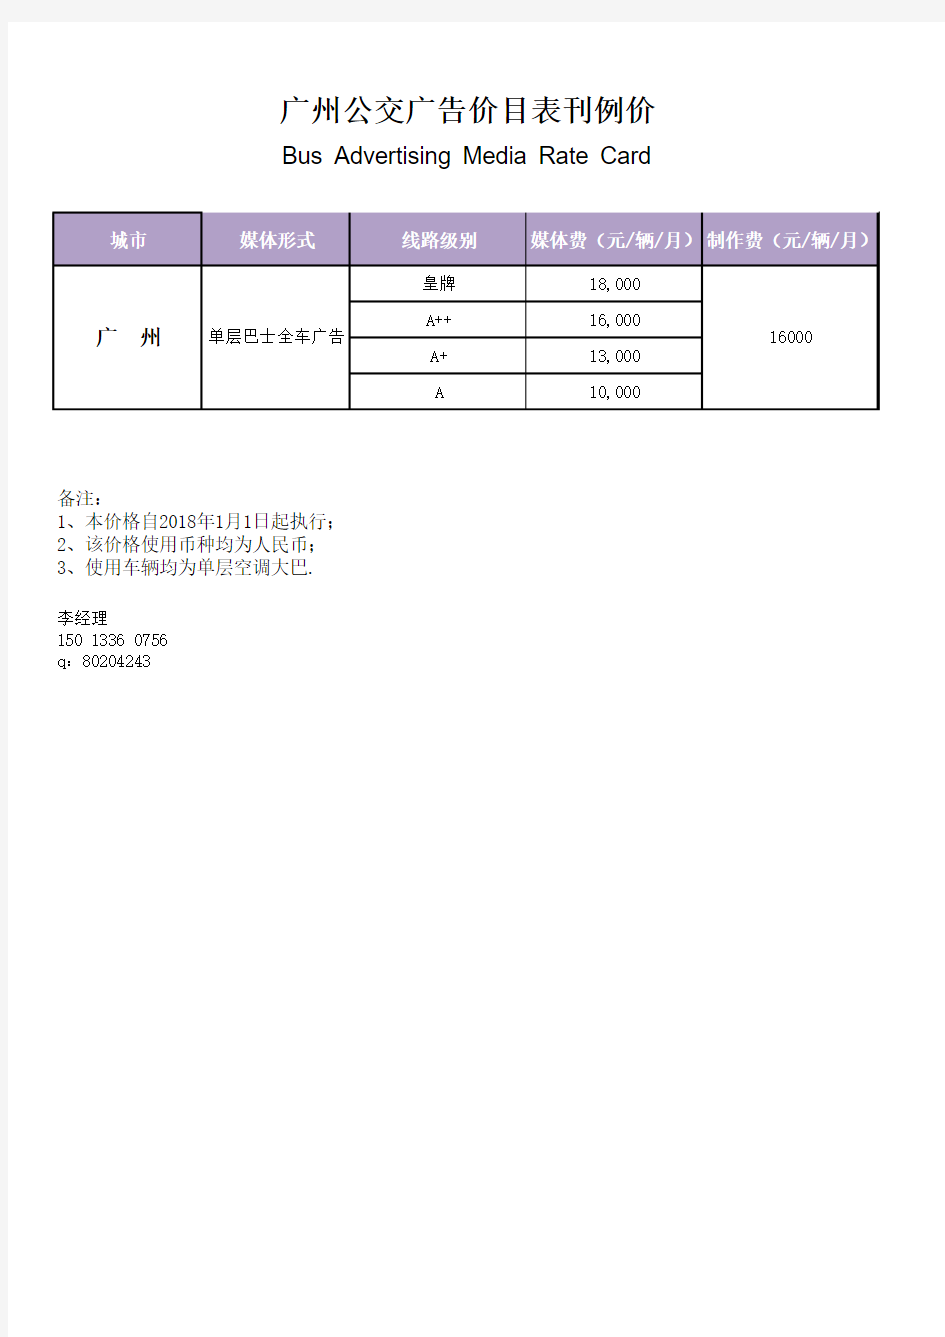 公交车身广告刊例价及线路资源表(广州)